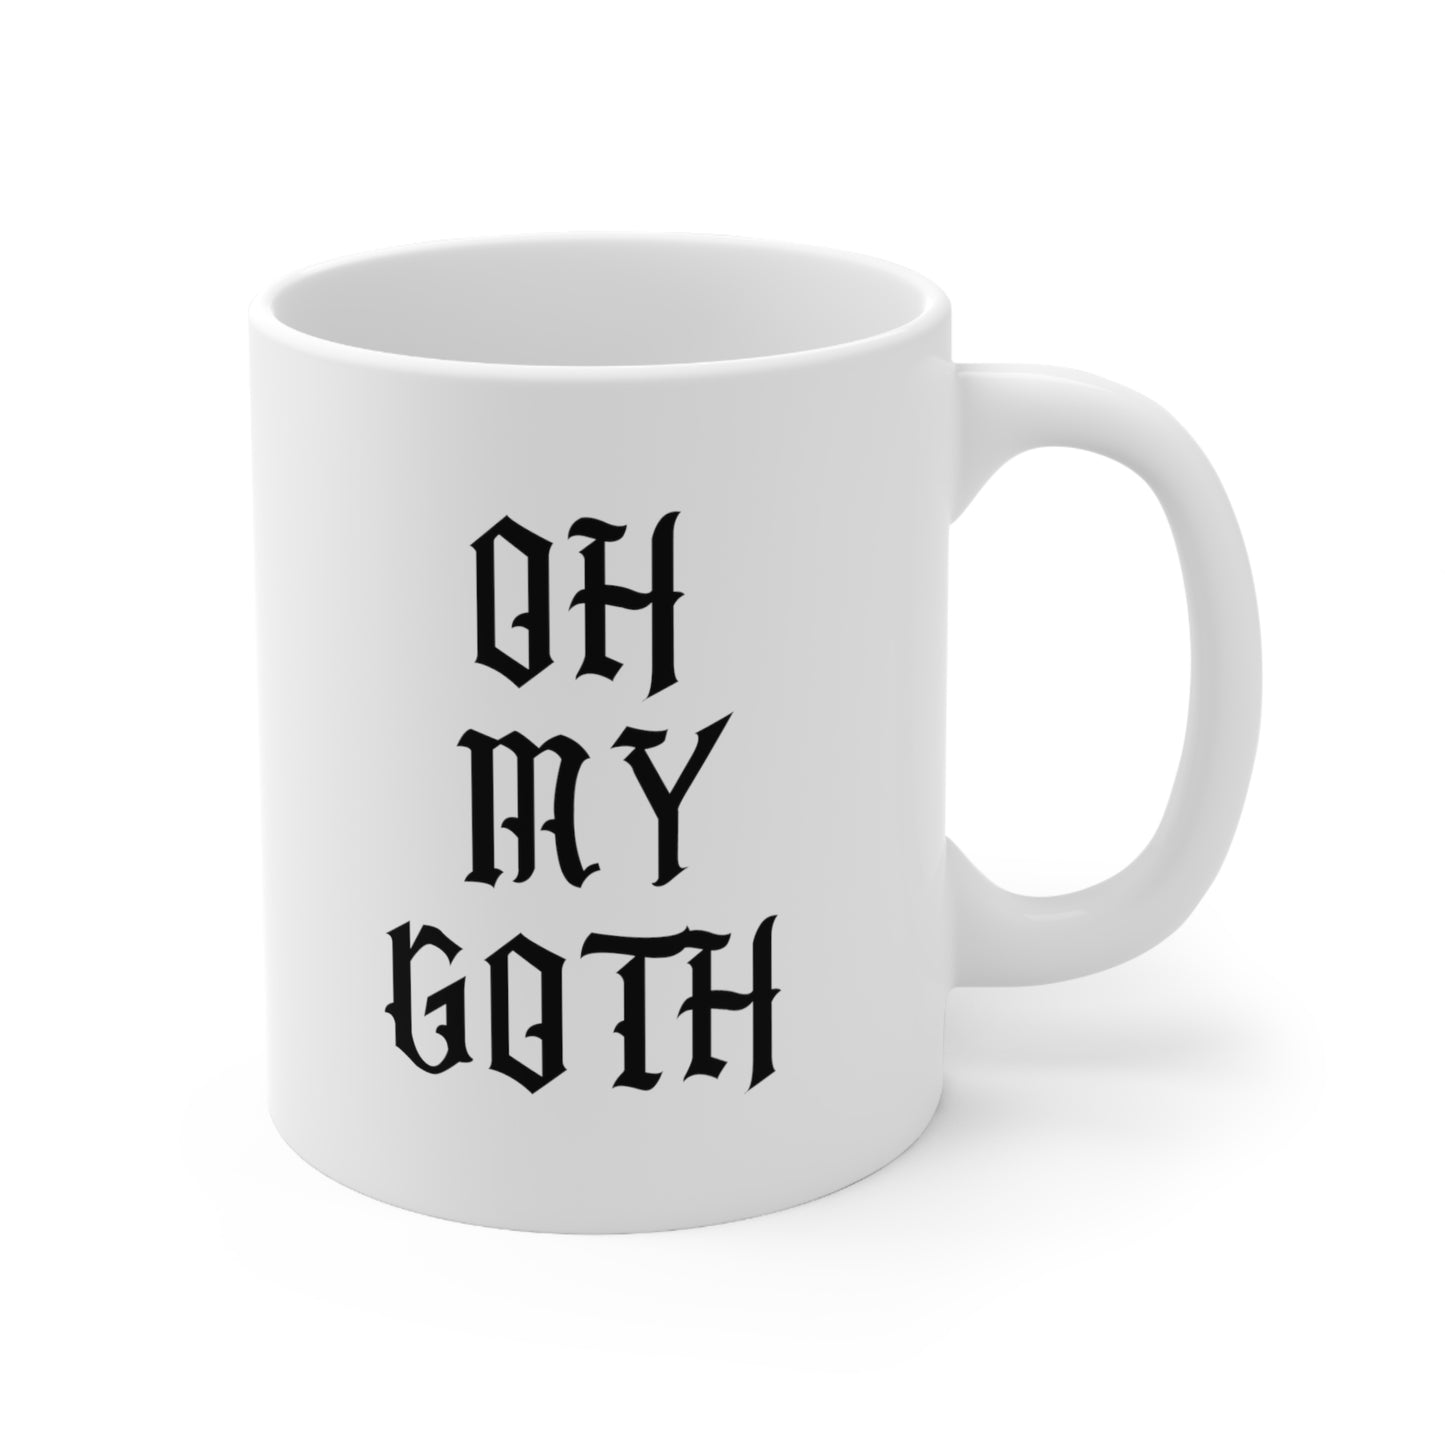 Oh My Goth Coffee Mug 11oz